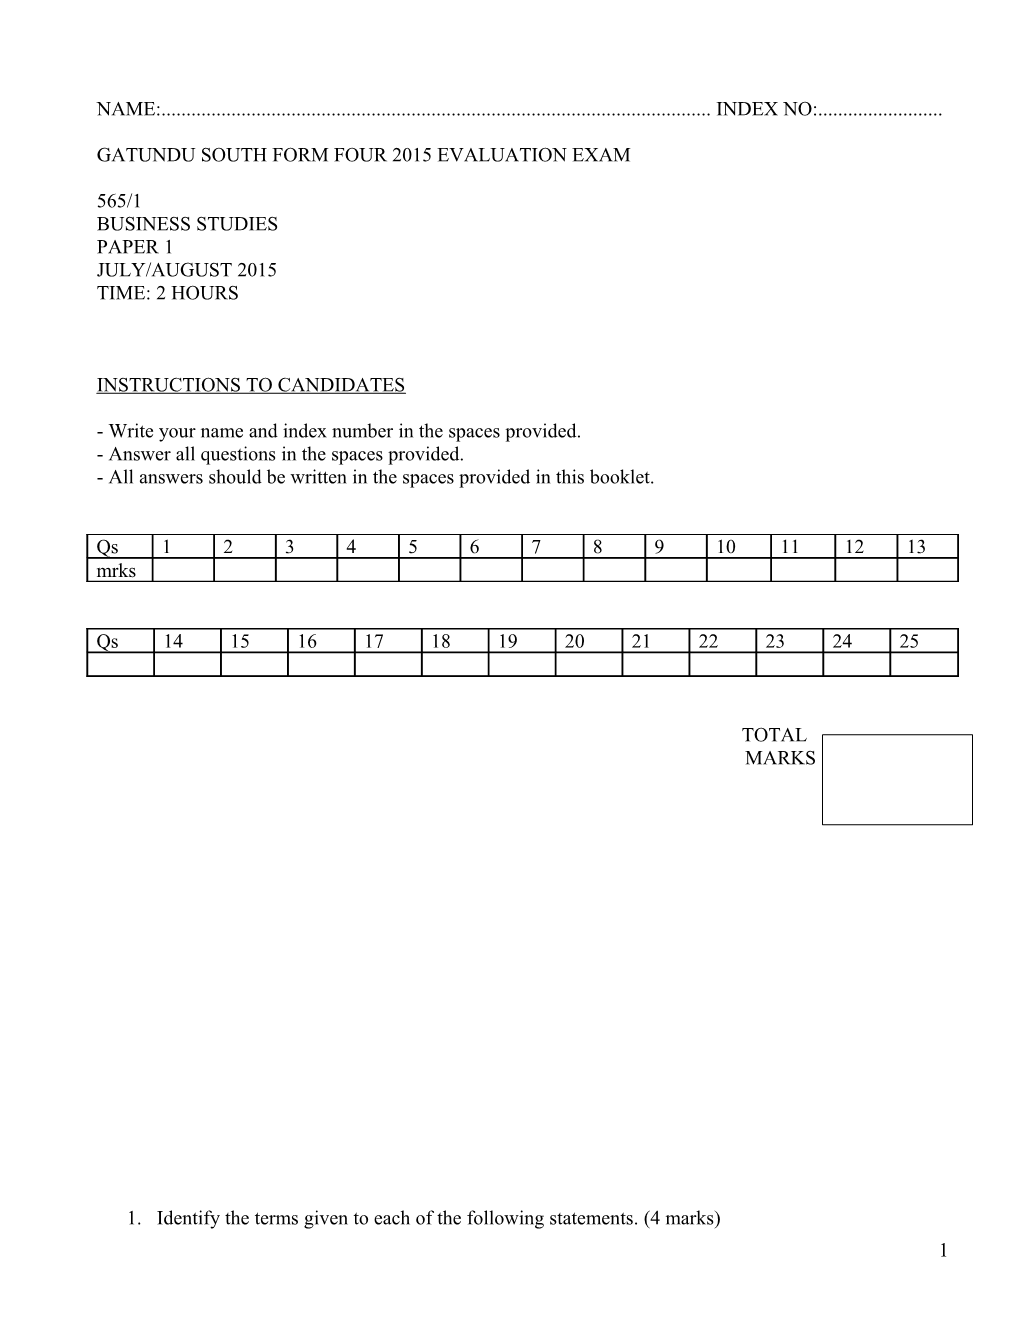 Gatundu South Form Four 2015 Evaluation Exam